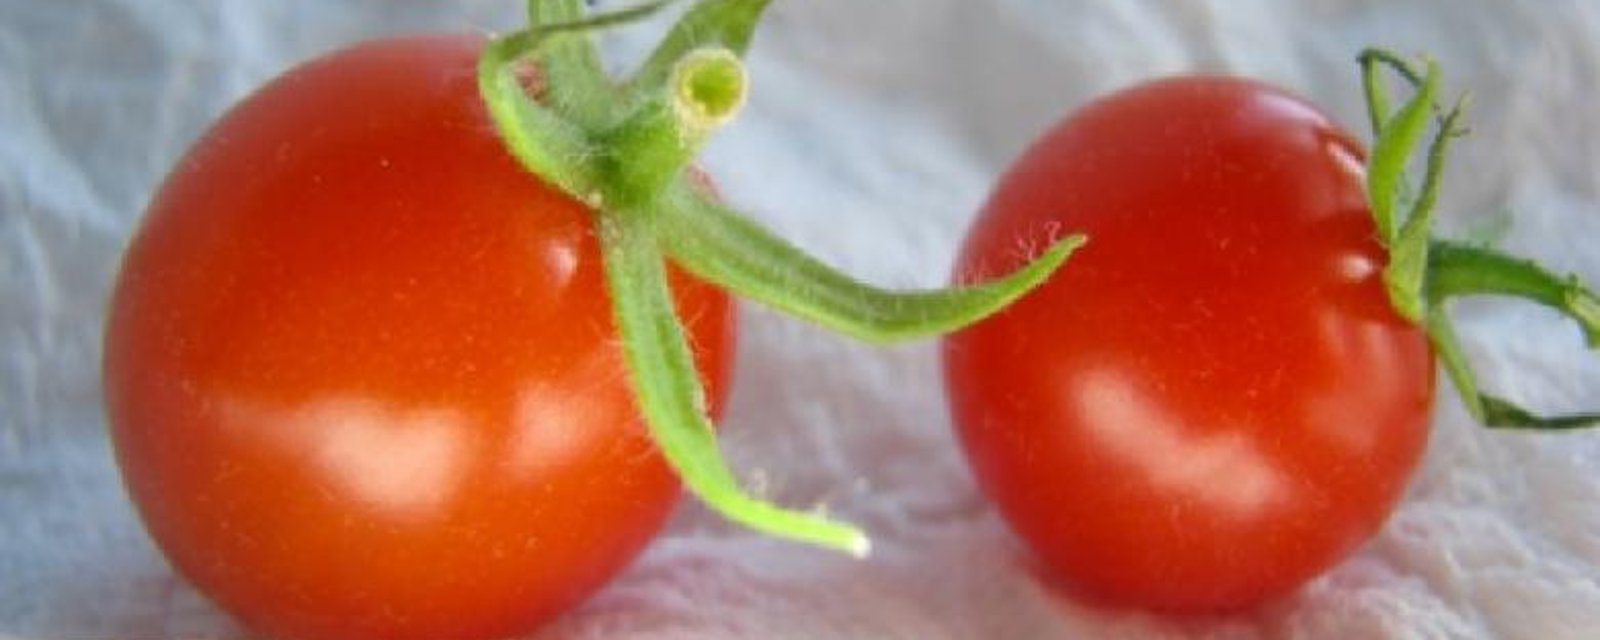 Ma mère range toujours ses tomates la tige en l'air pour une raison bien spécifique.. J'ignorais cette astuce!